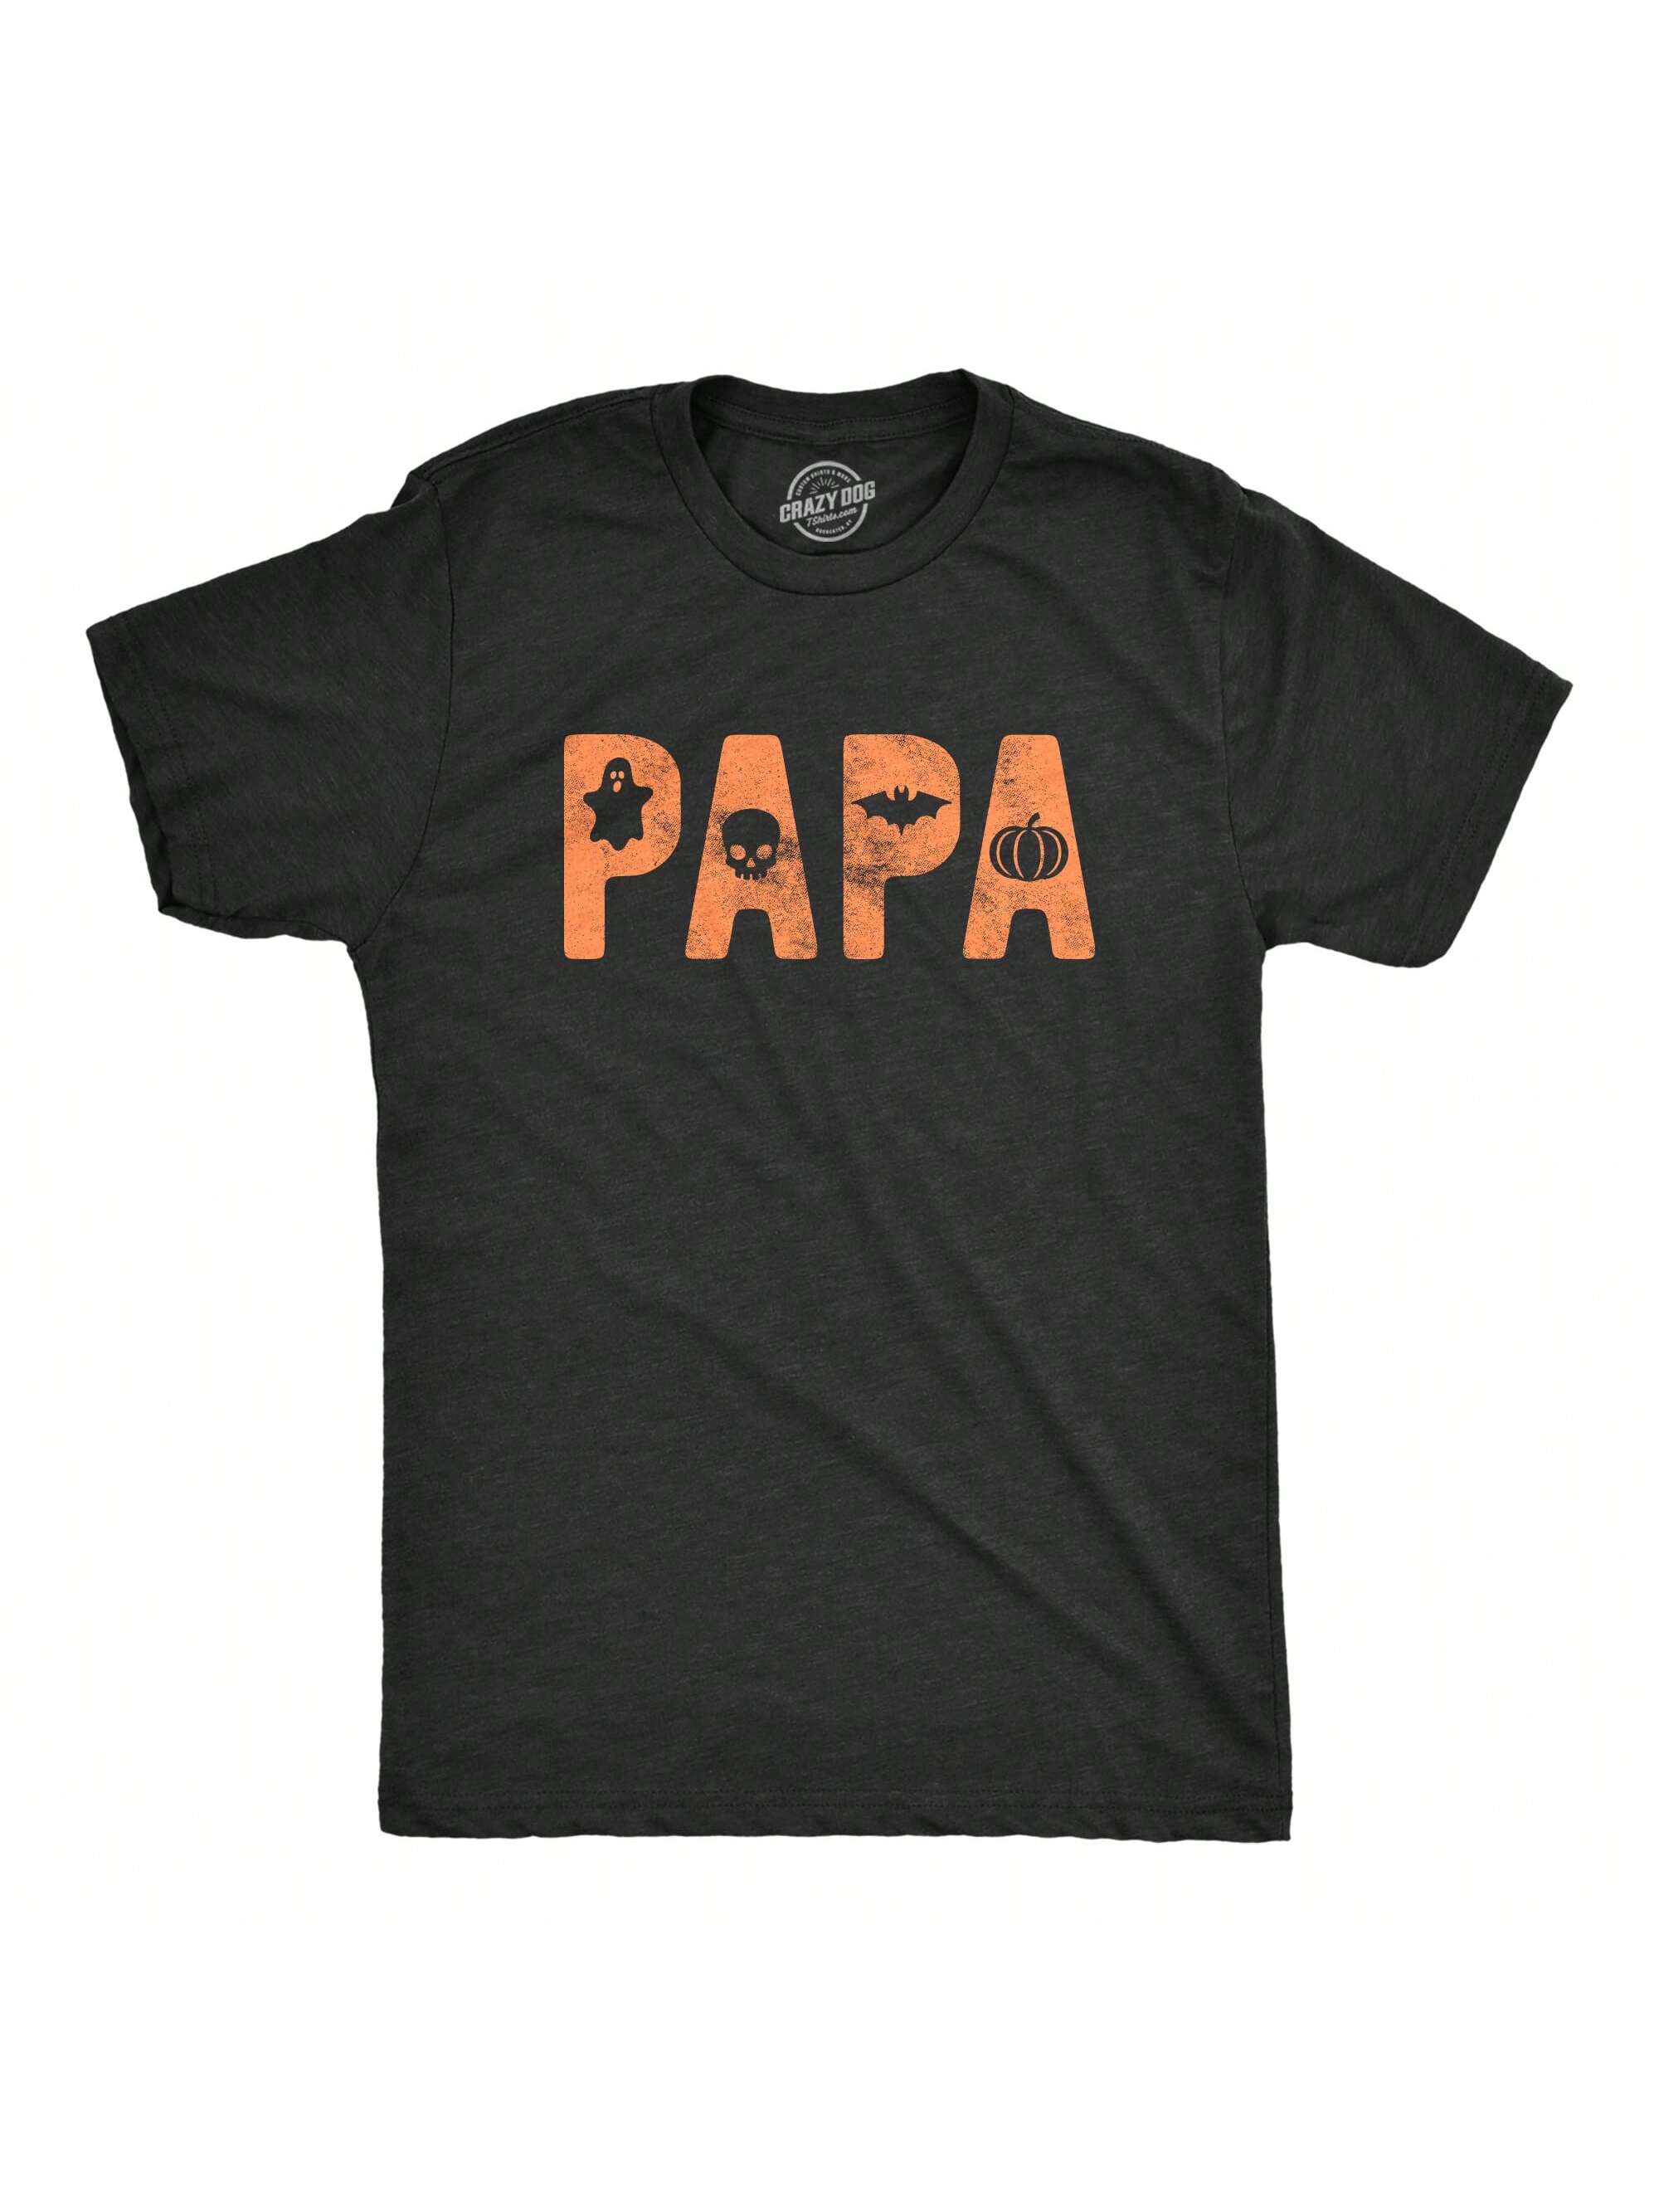 Мужская футболка для папы на Хэллоуин, хизер блэк — папа